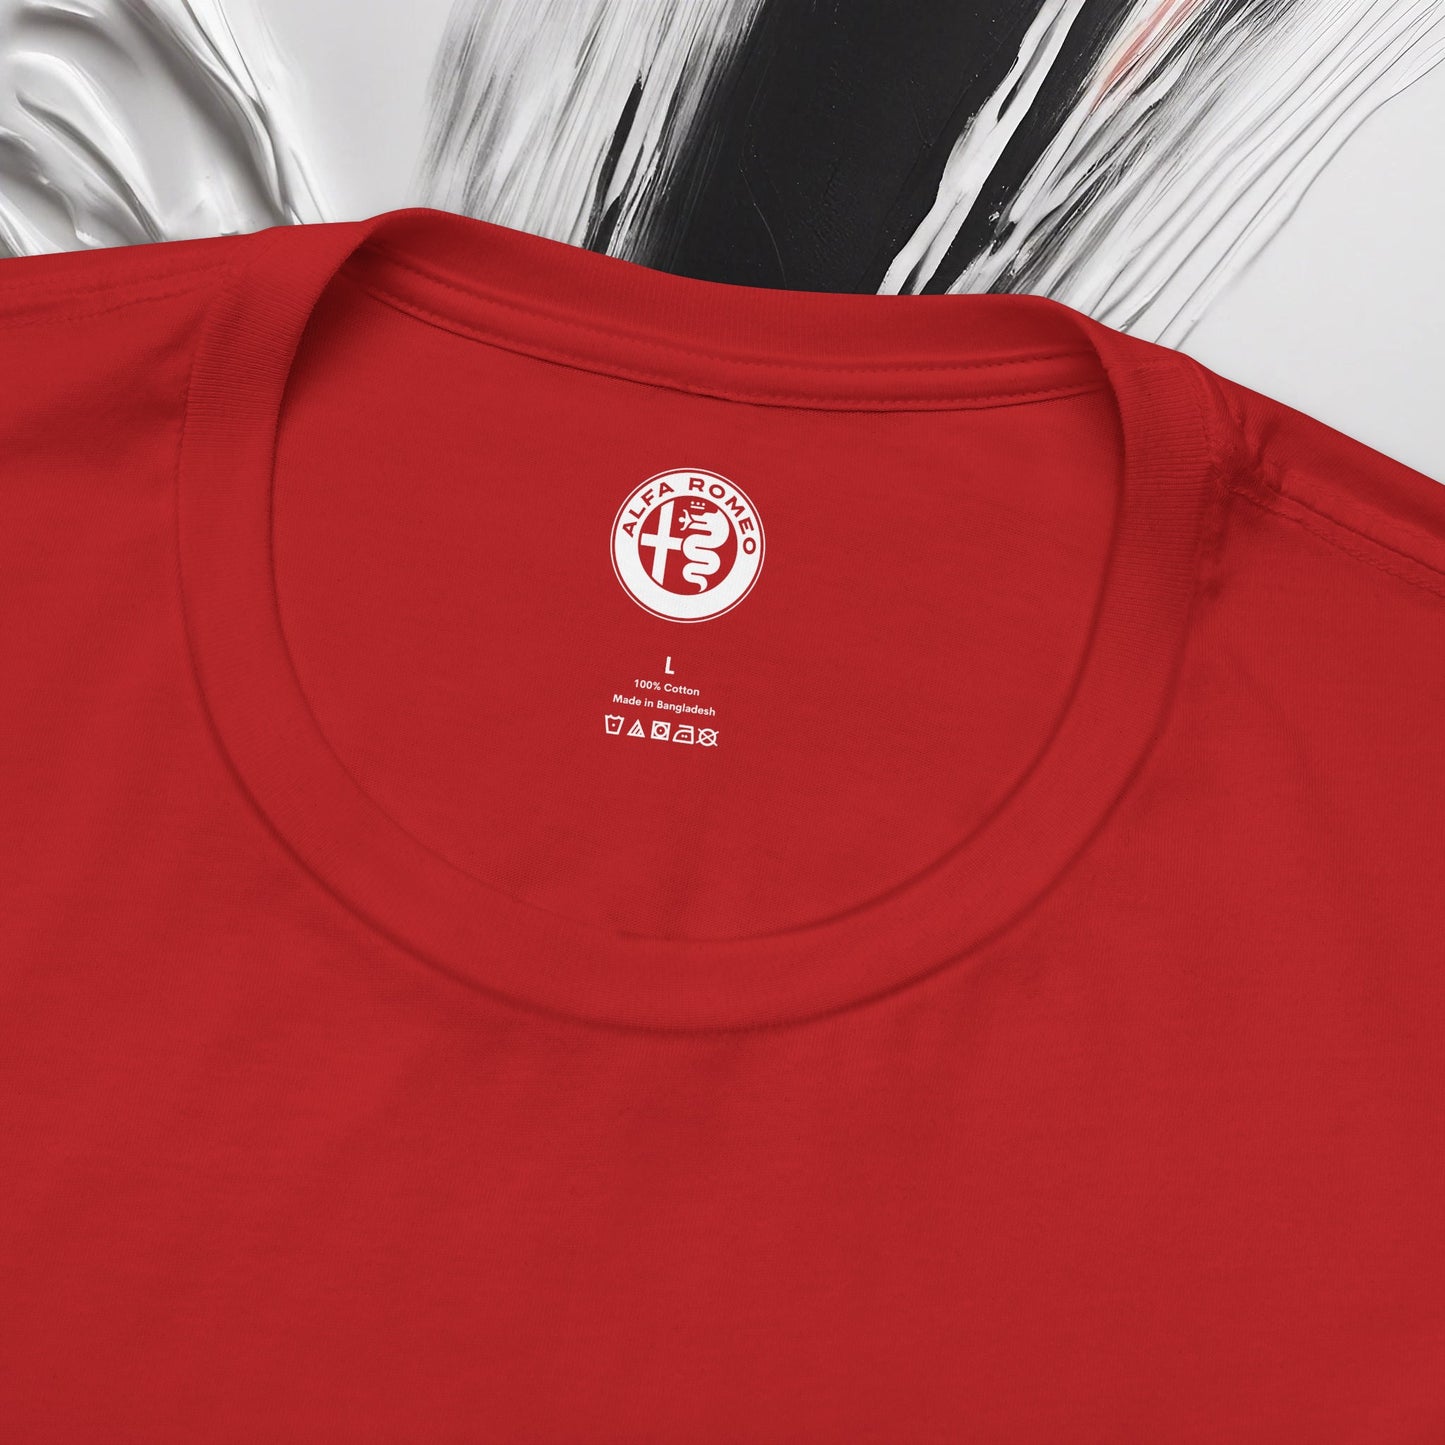 Alfa Romeo Bella+Canvas Kurzarm-T-Shirt – ethisches Unisex-Baumwoll-T-Shirt – hergestellt in den USA